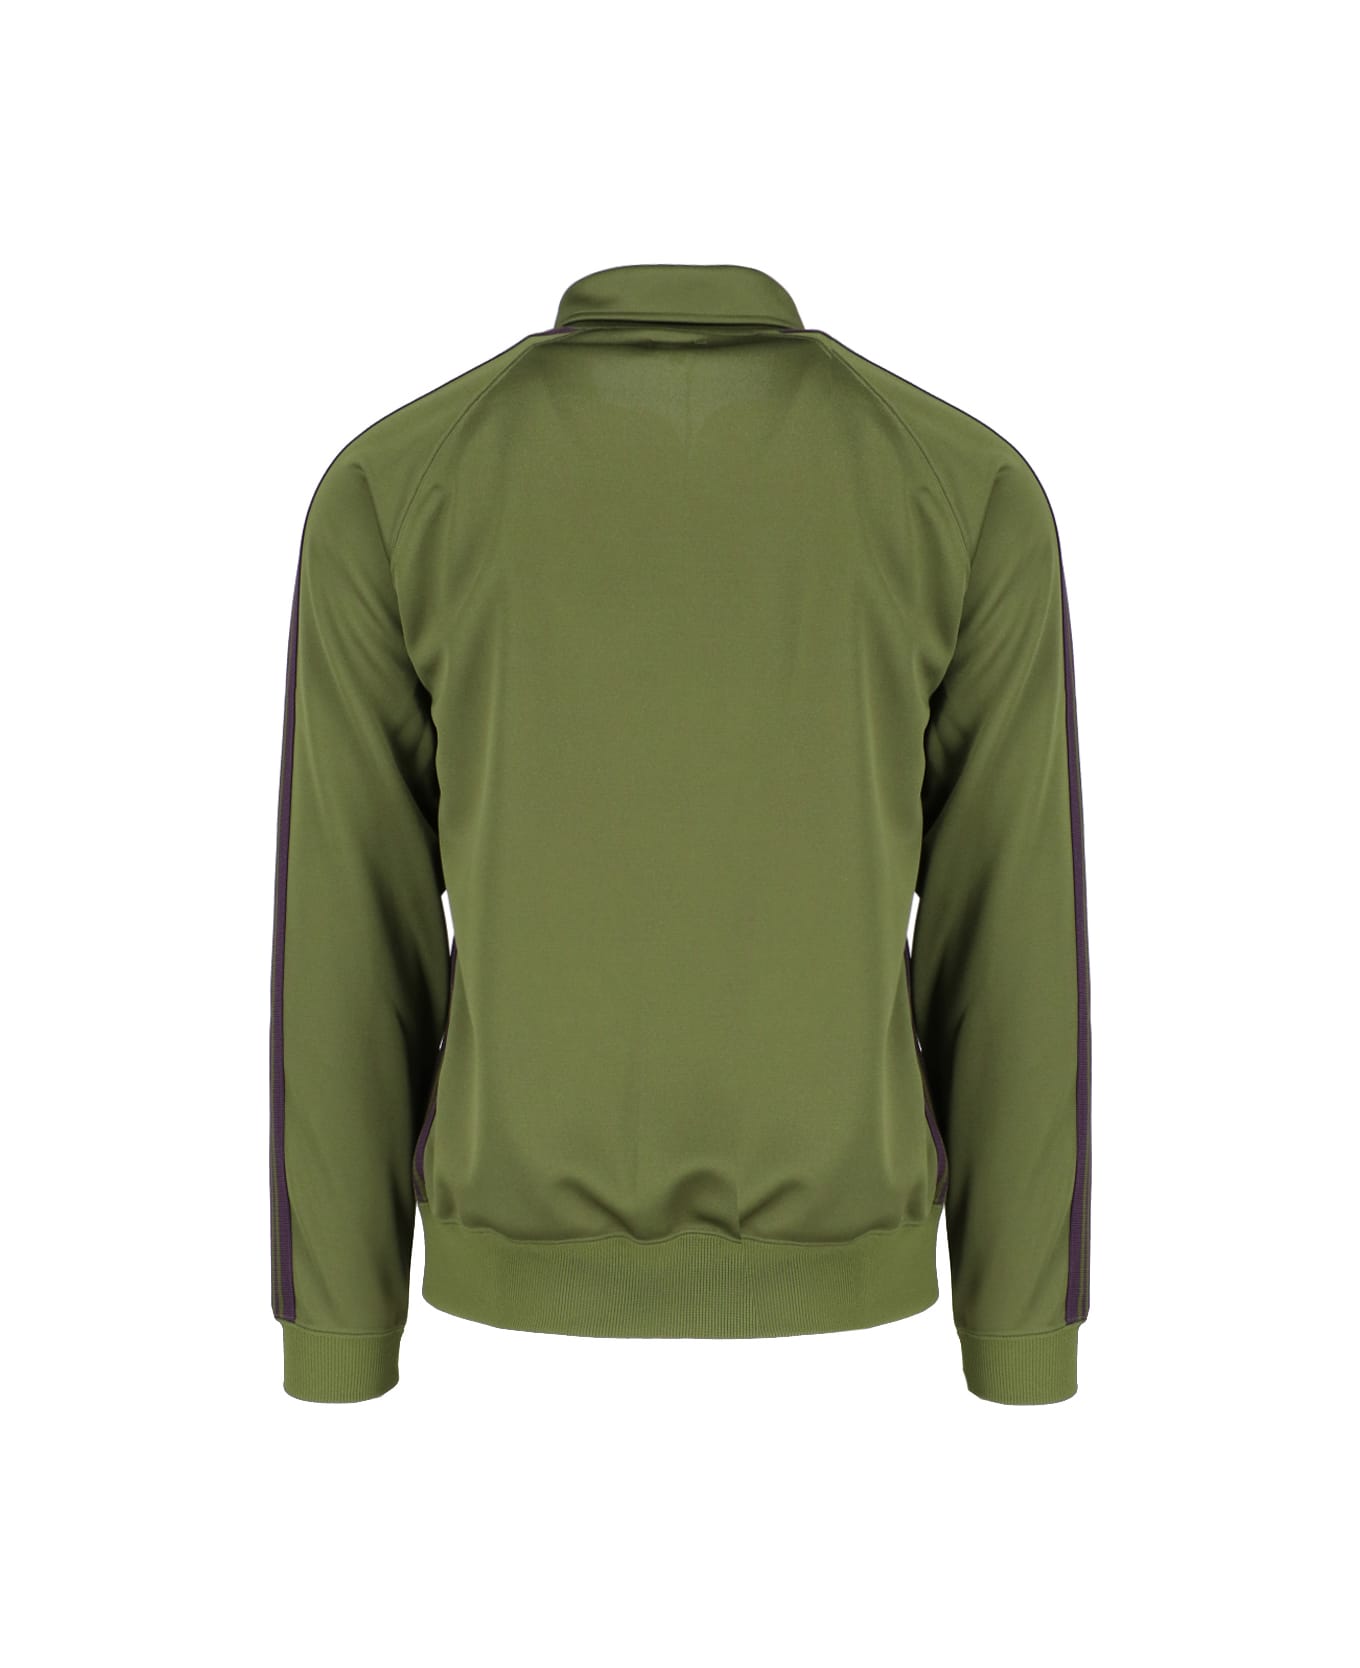 Needles 'olive' Zip Sweatshirt - Green